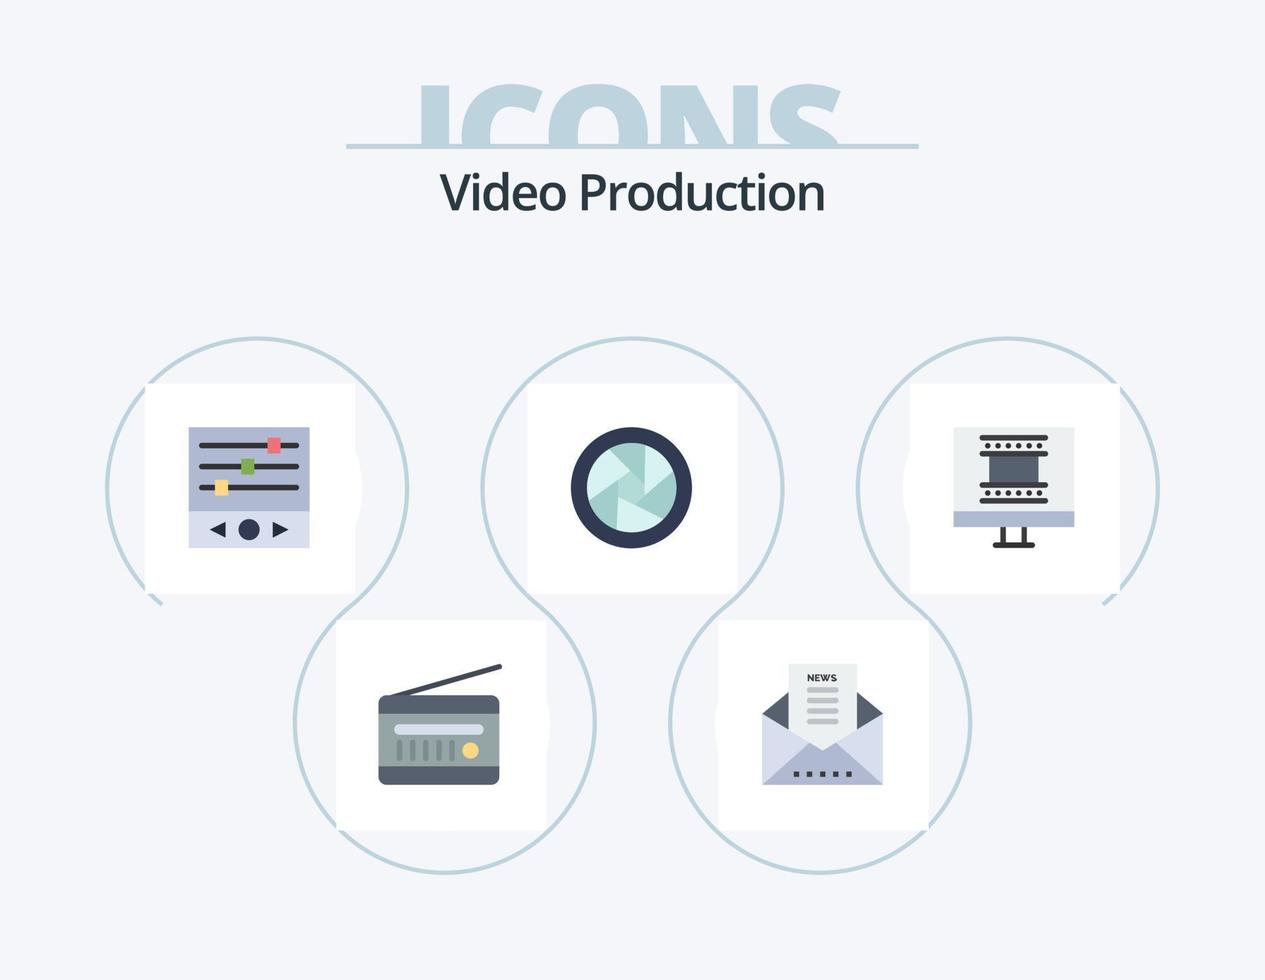 produção de vídeo flat icon pack 5 design de ícones. lentes da câmera. acessórios da câmera. Boletim de Notícias. frequência do som vetor